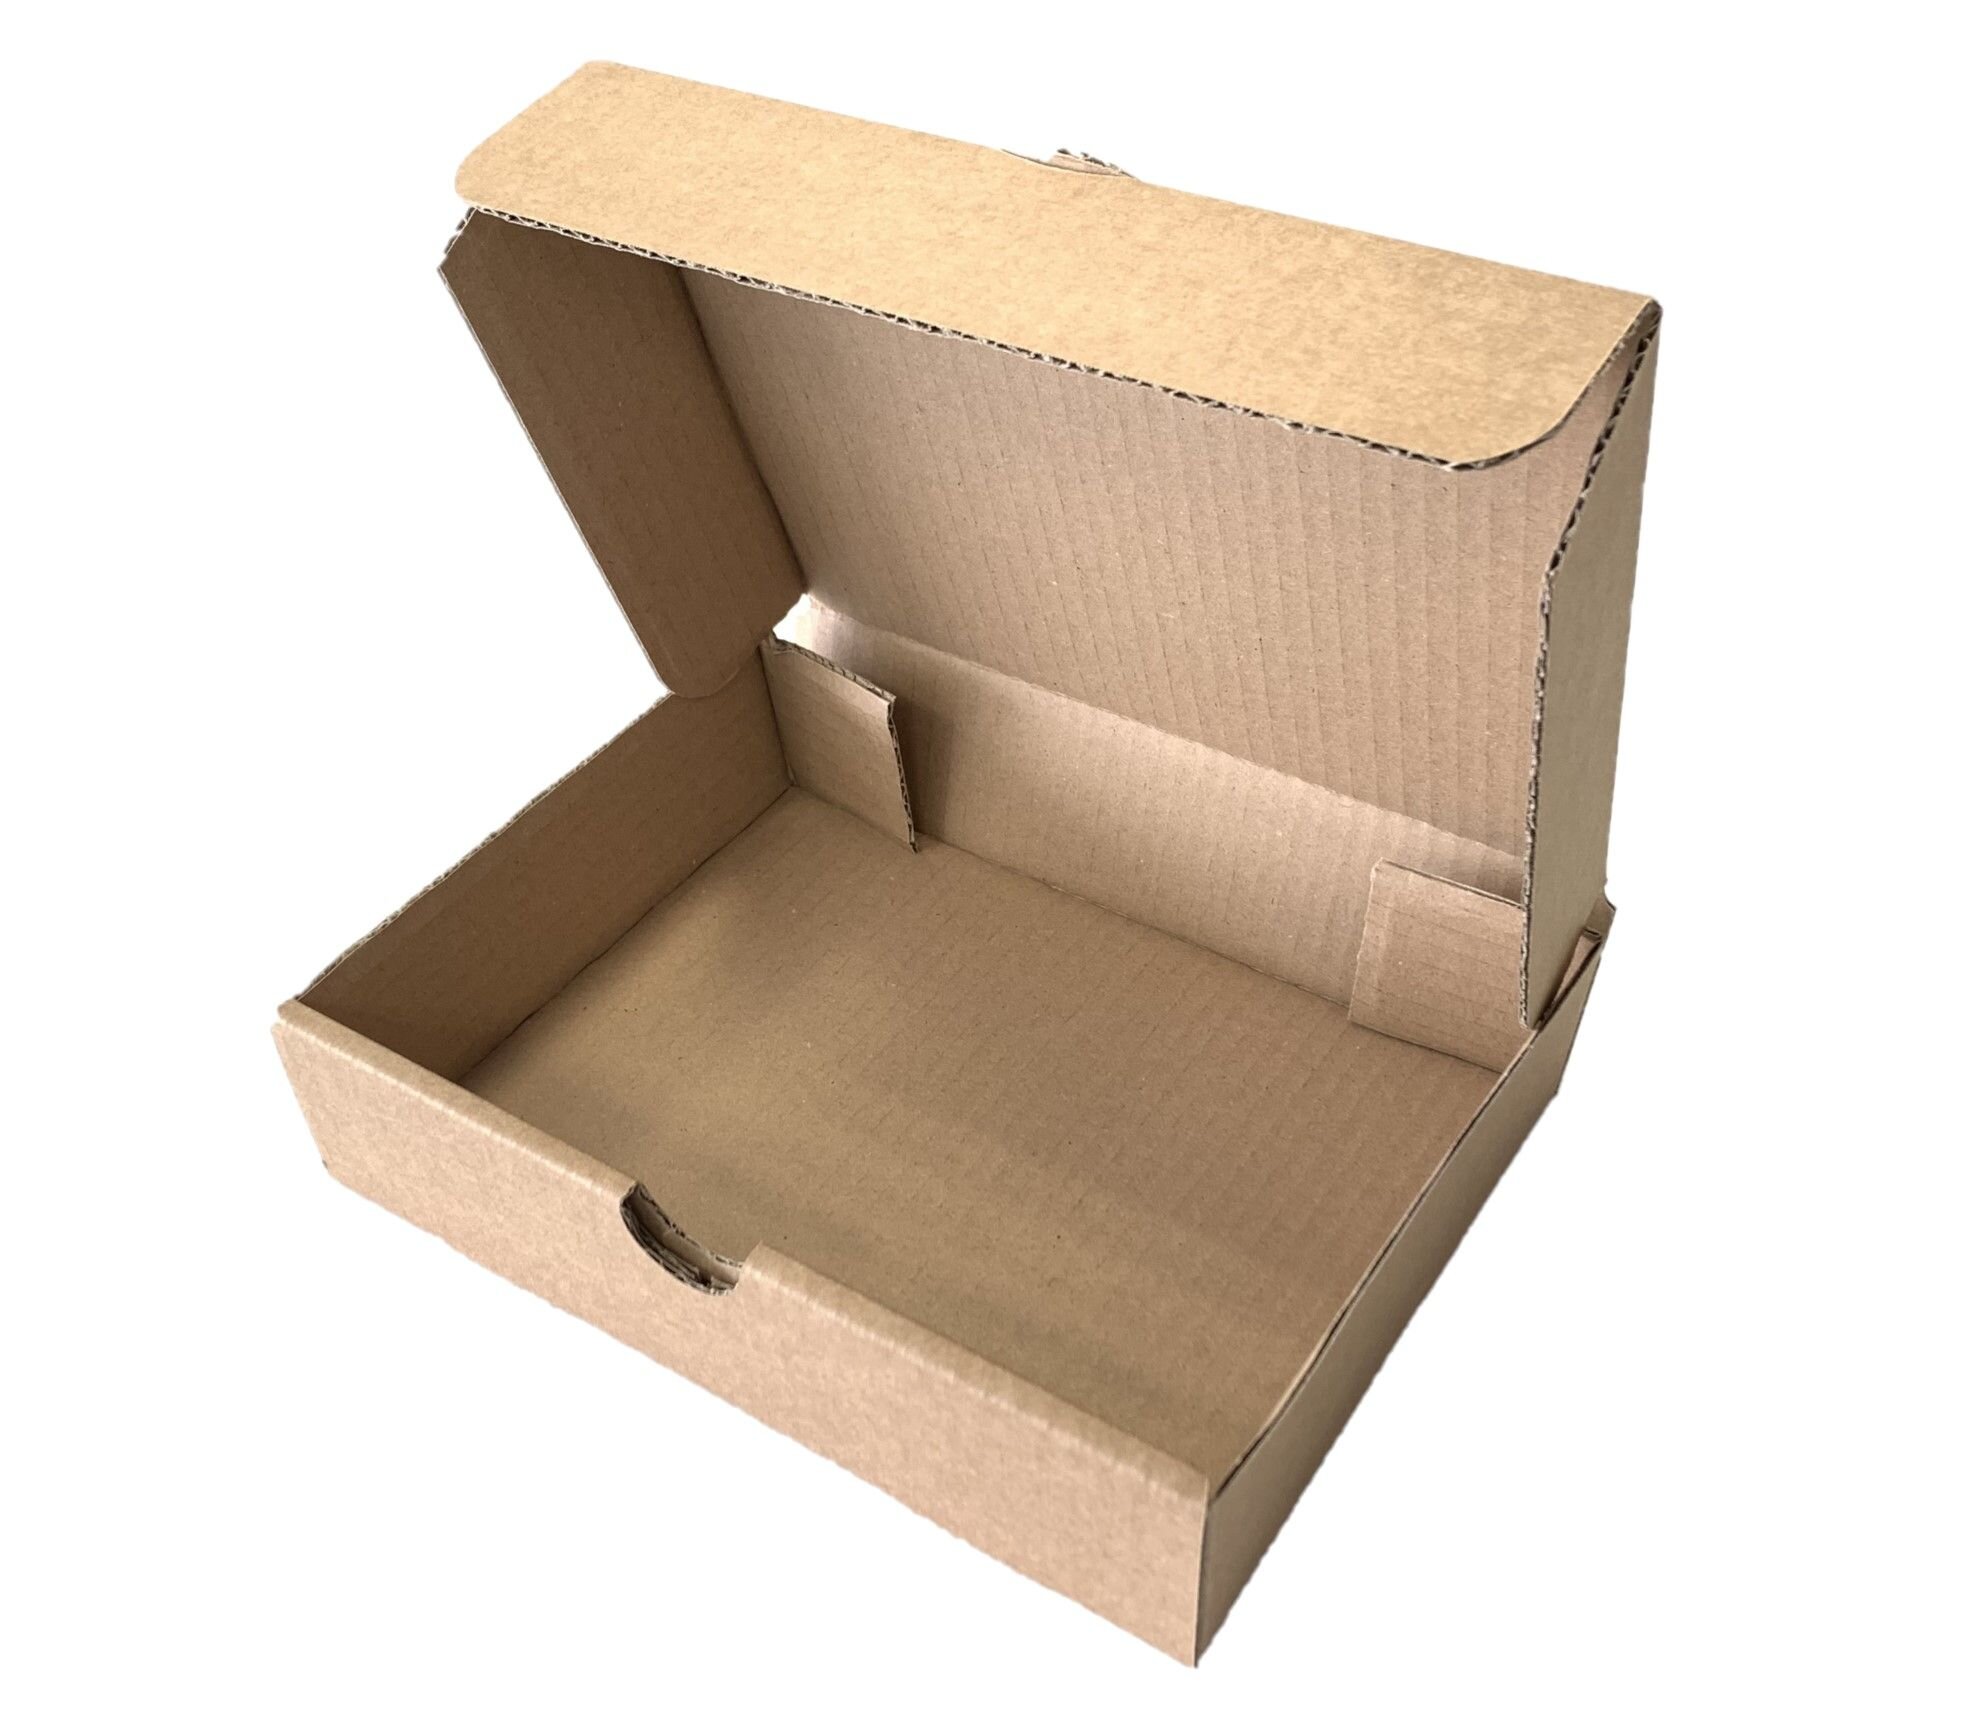 Boîte postale en carton - Boite carton brune